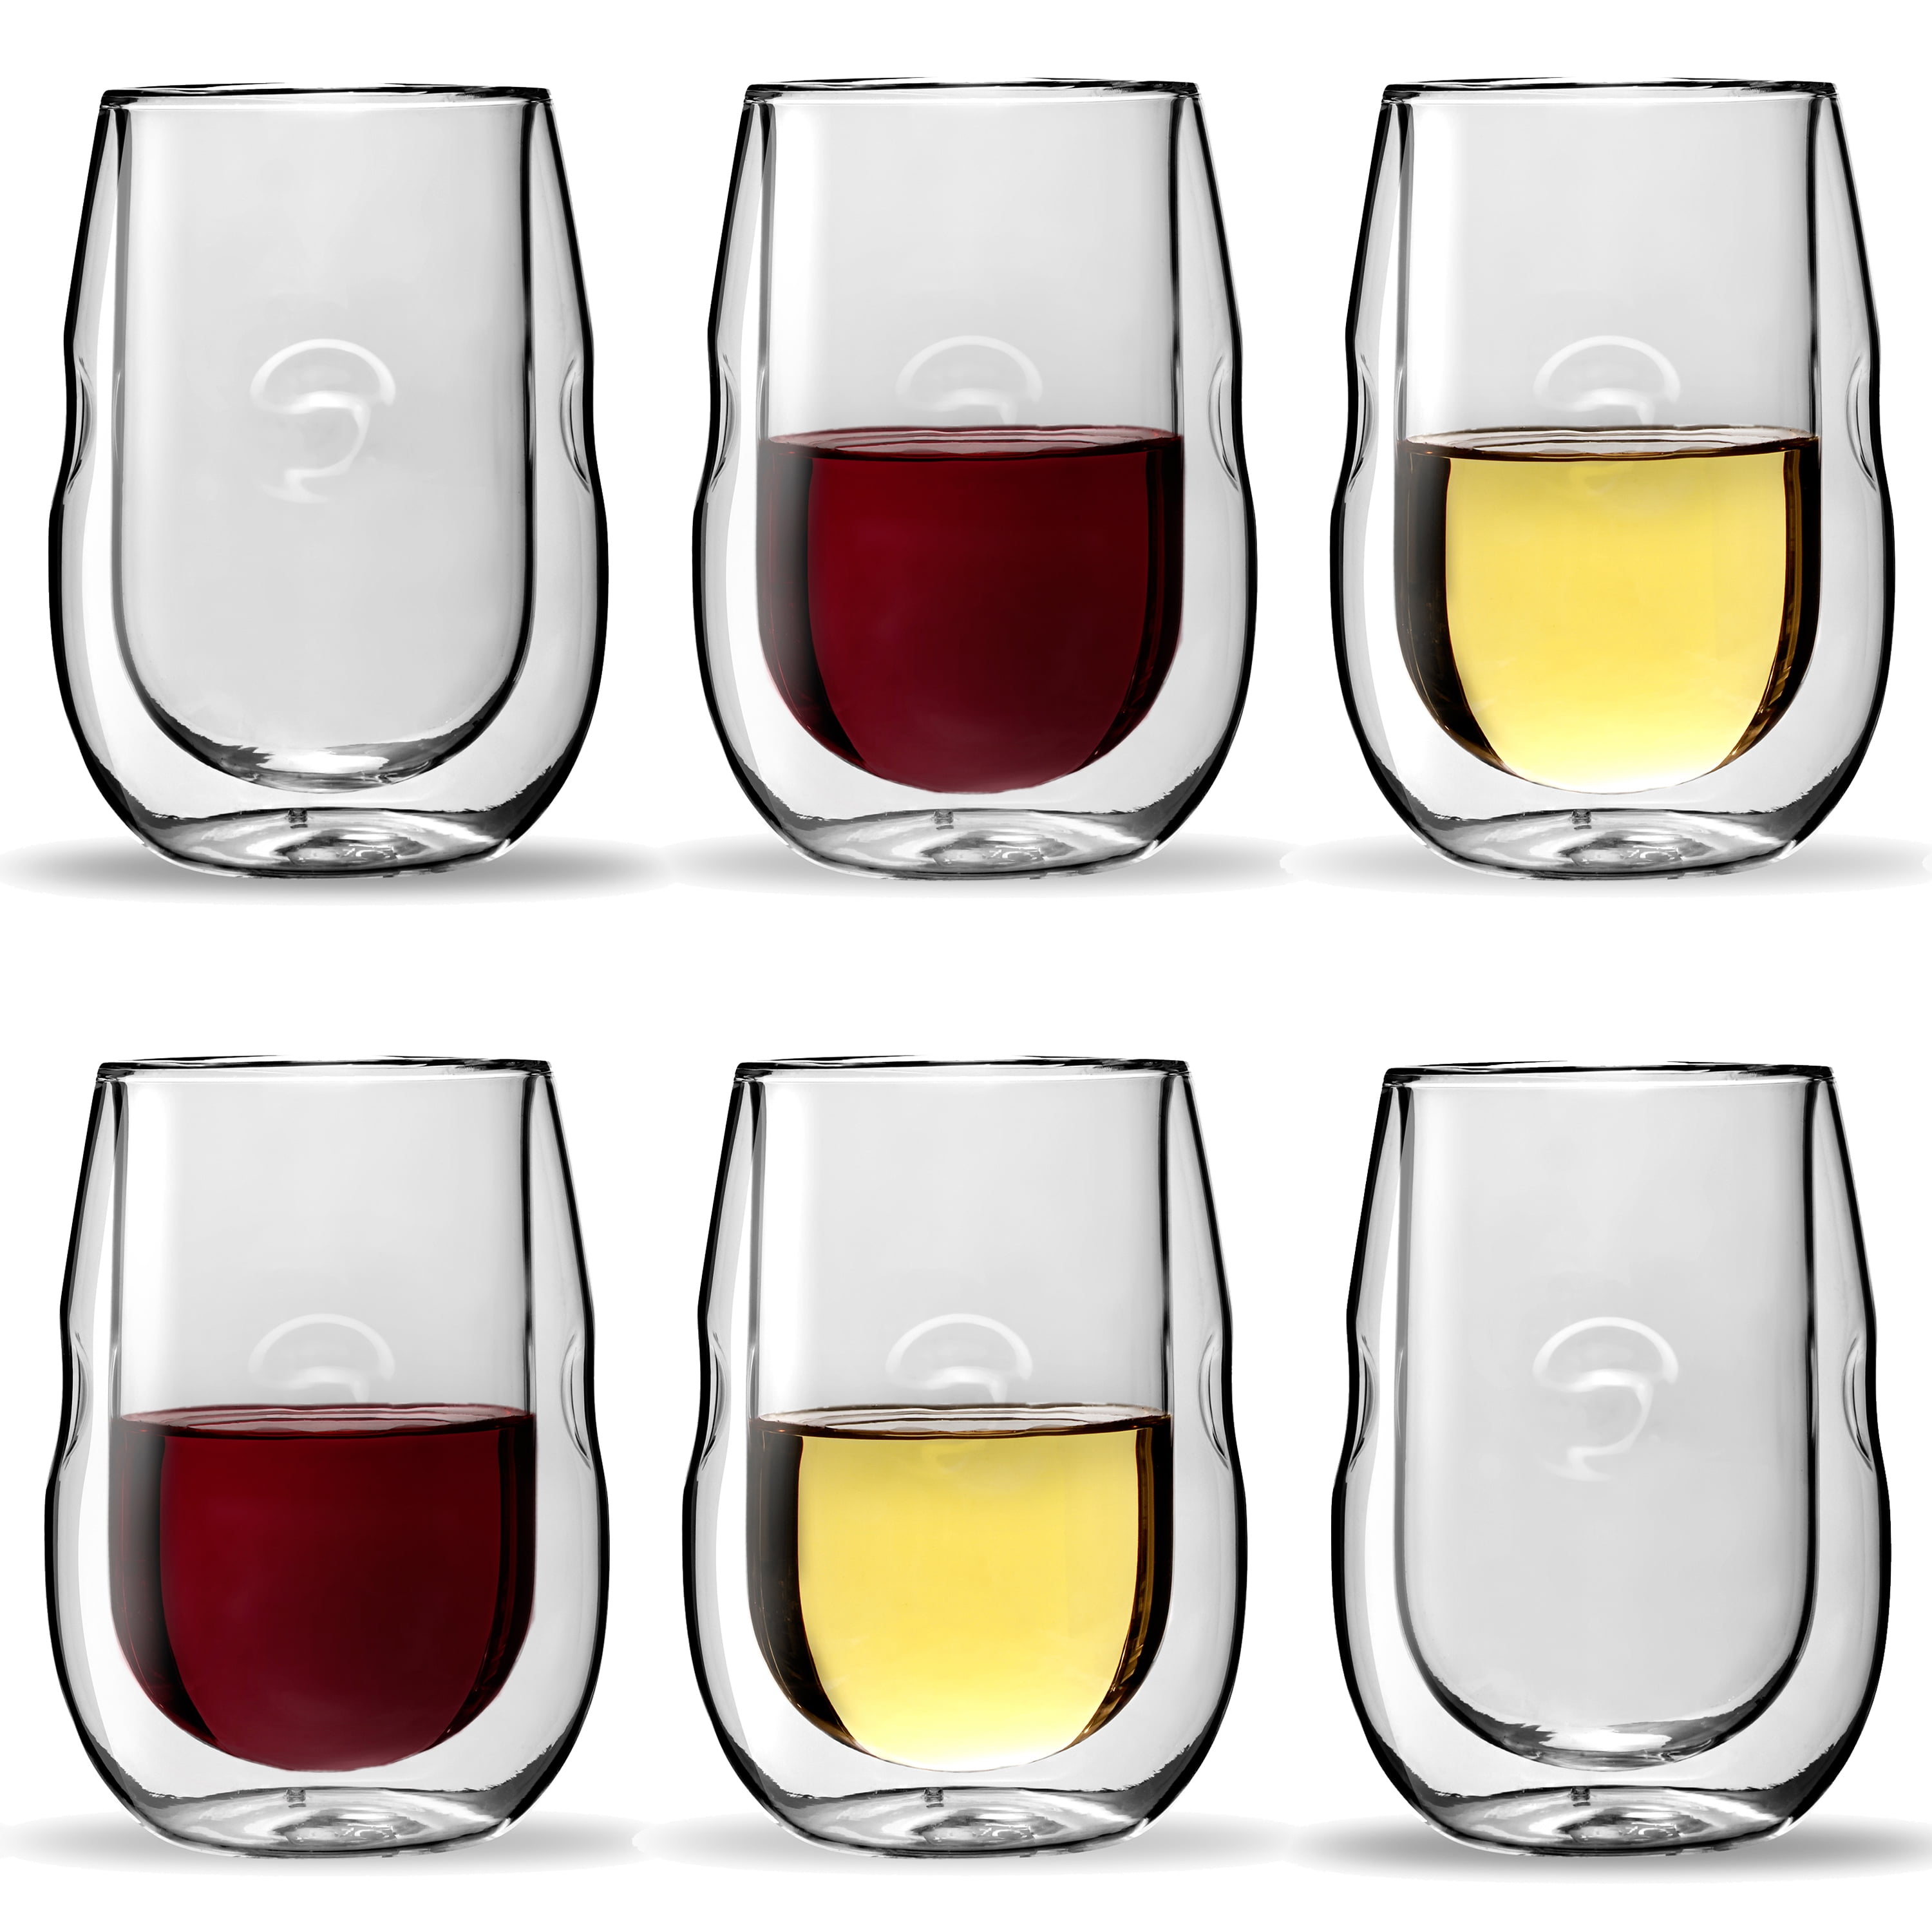 Ozeri Moderna Artisan Series 10 oz Double Wall Whiskey Glasses – Set of 2